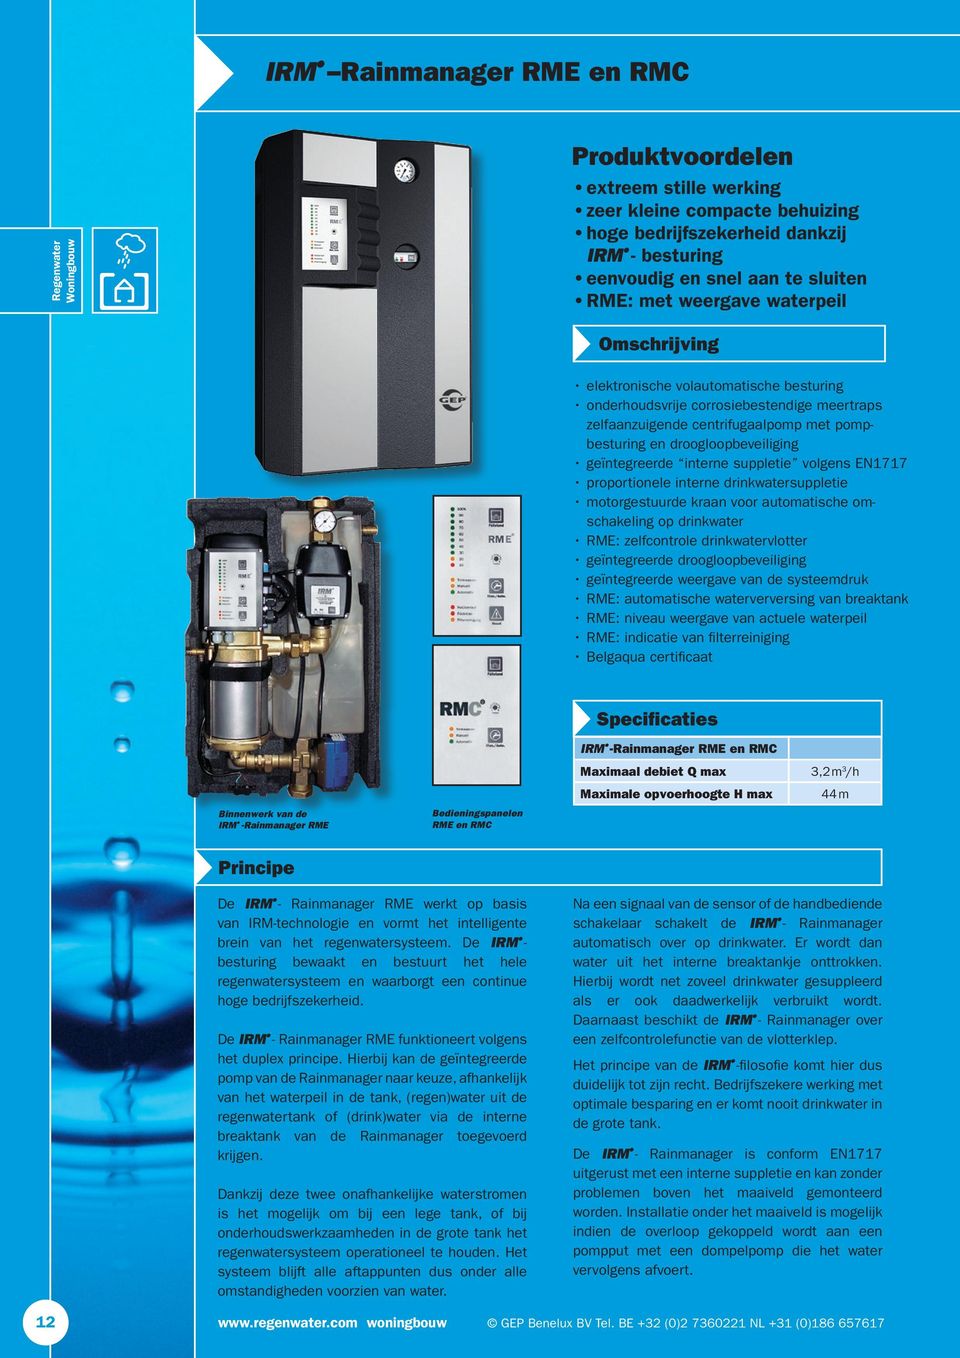 droogloopbeveiliging geïntegreerde interne suppletie volgens EN1717 proportionele interne drinkwatersuppletie motorgestuurde kraan voor automatische omschakeling op drinkwater RME: zelfcontrole